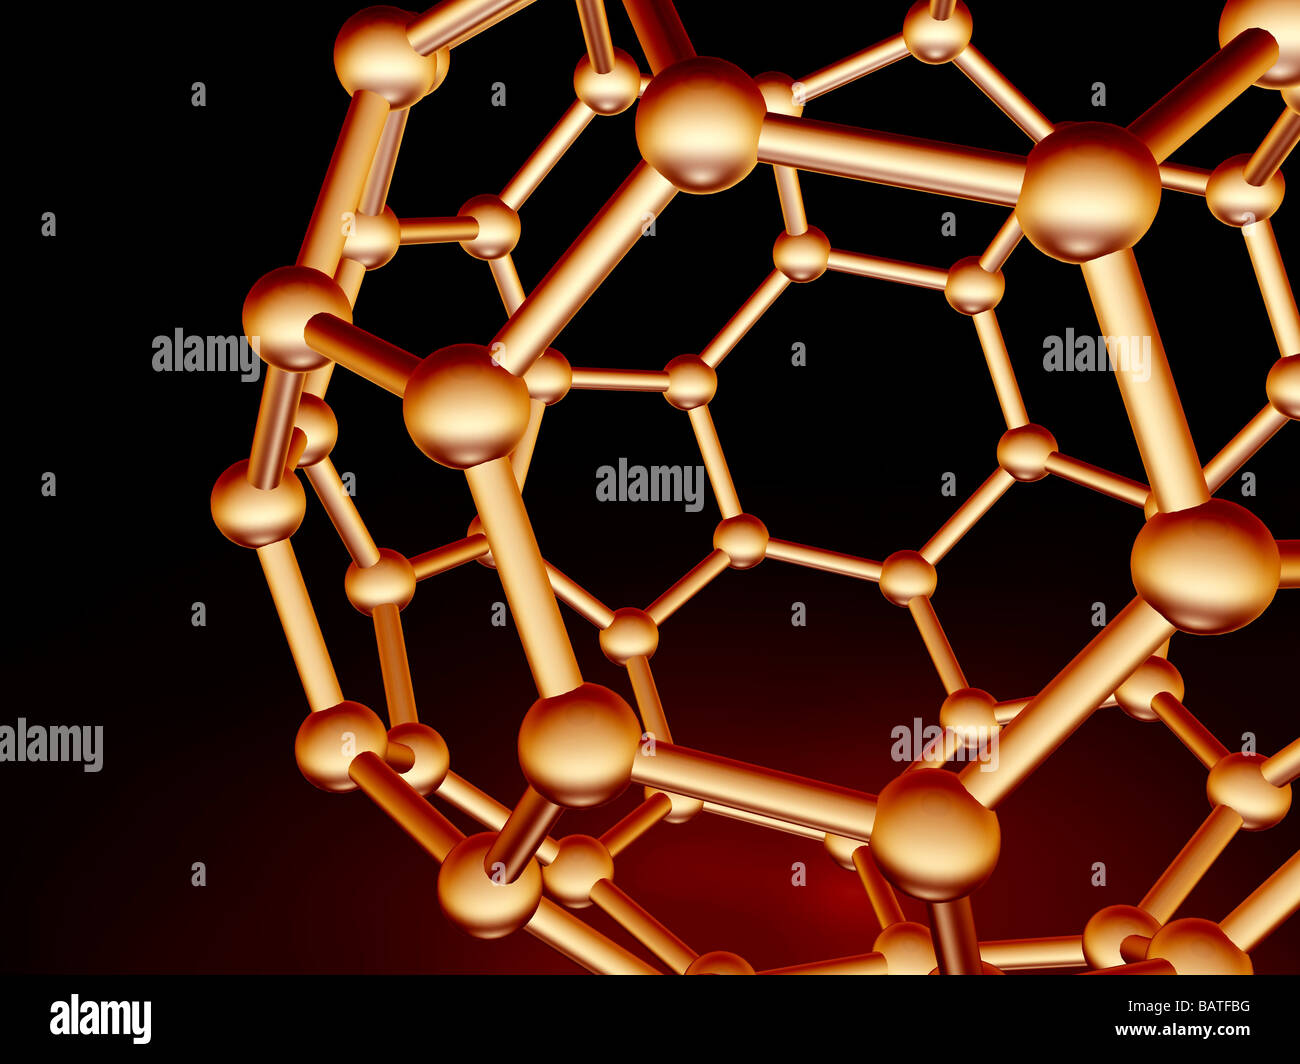 Buckminsterfullerene molecule. Molecular model of a fullerene molecule, a structurally distinct form(allotrope) of carbon. Stock Photo